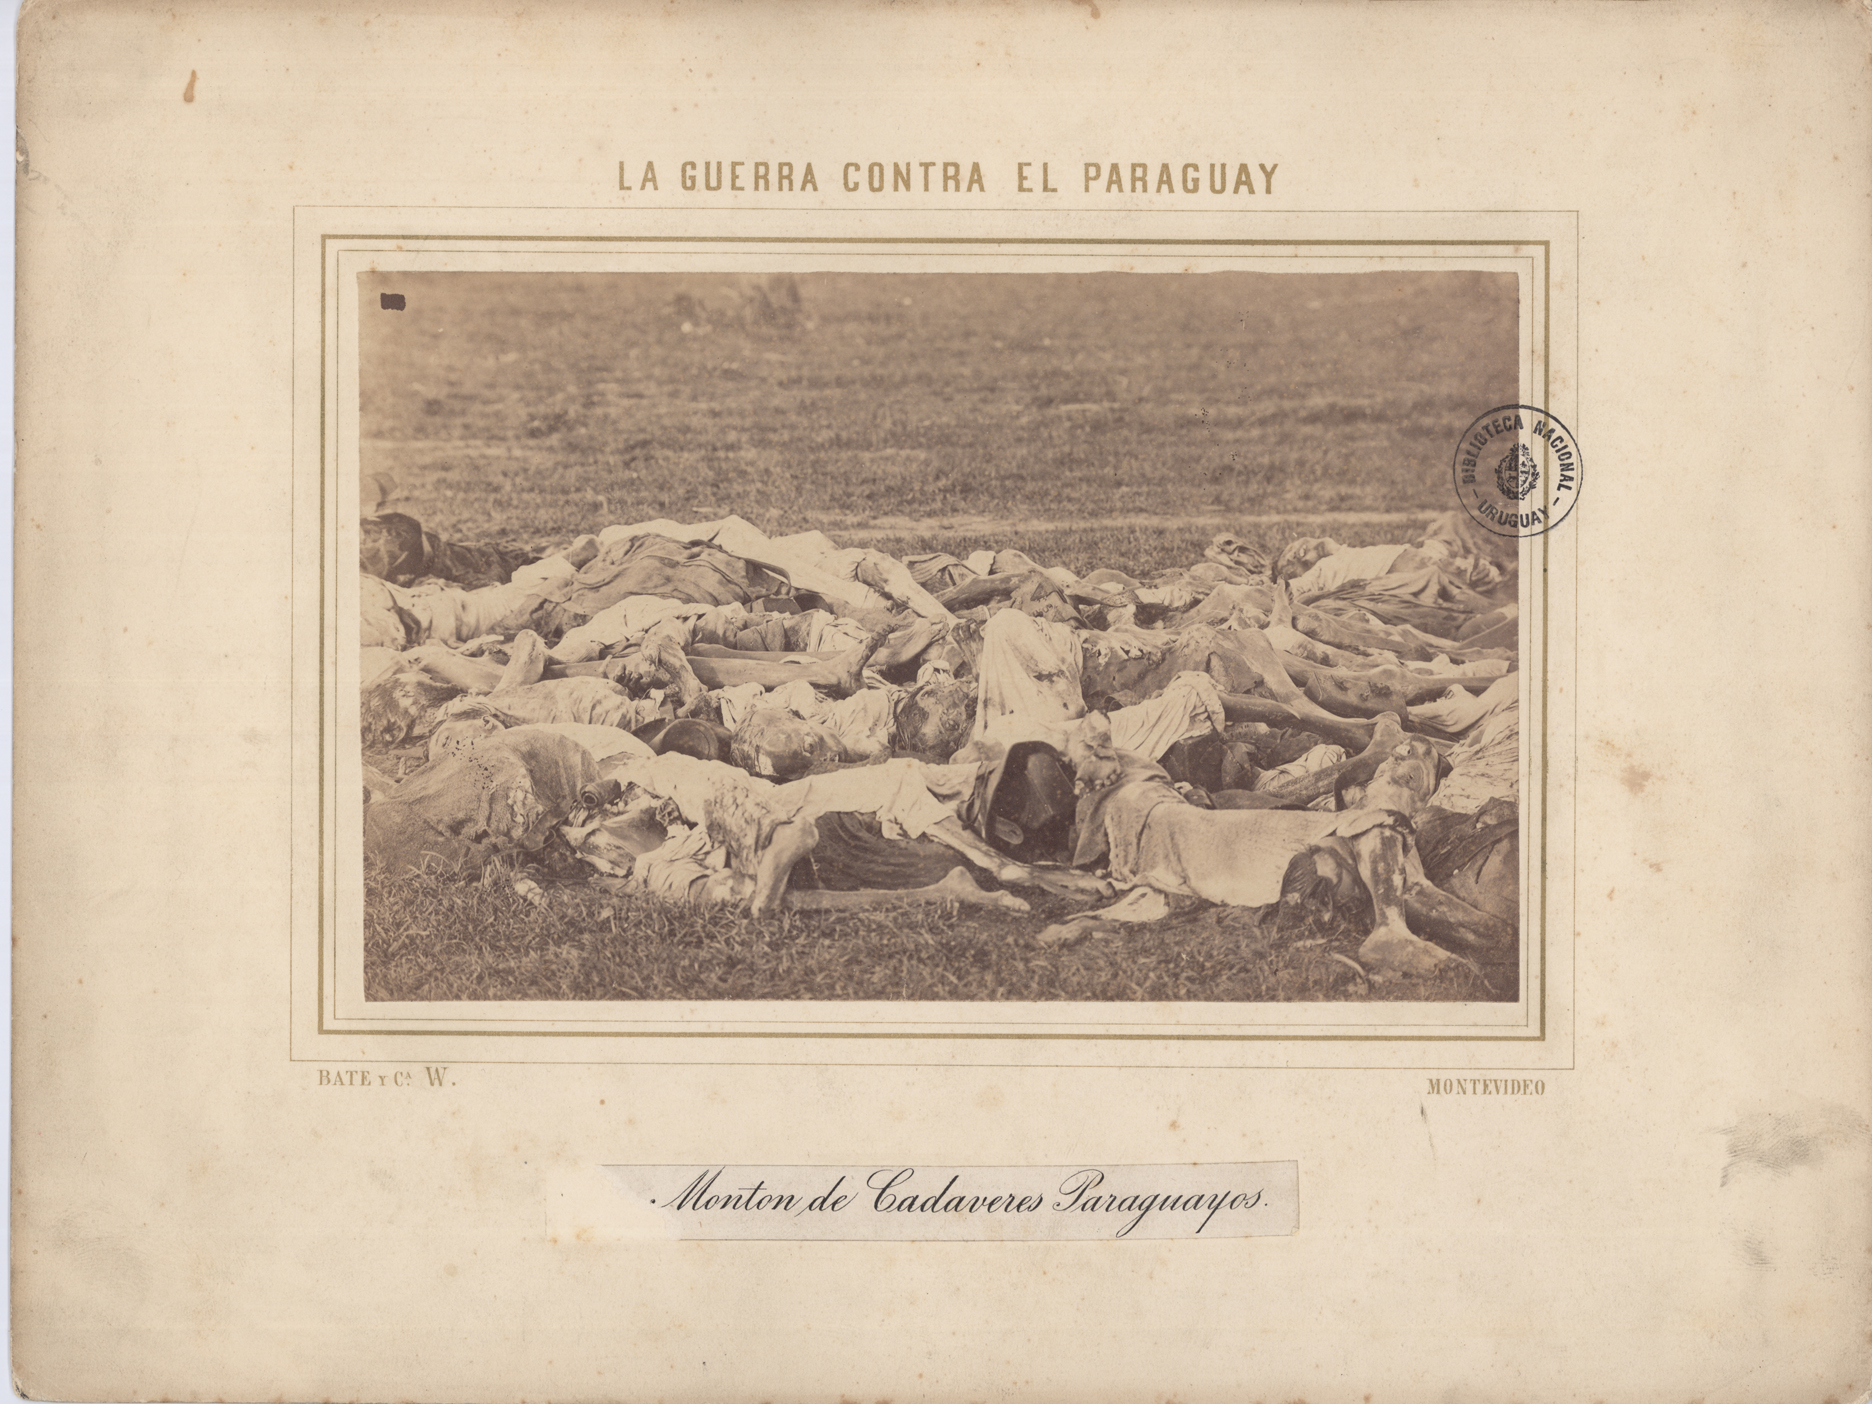 Foto que muestra cadáveres amontonados.